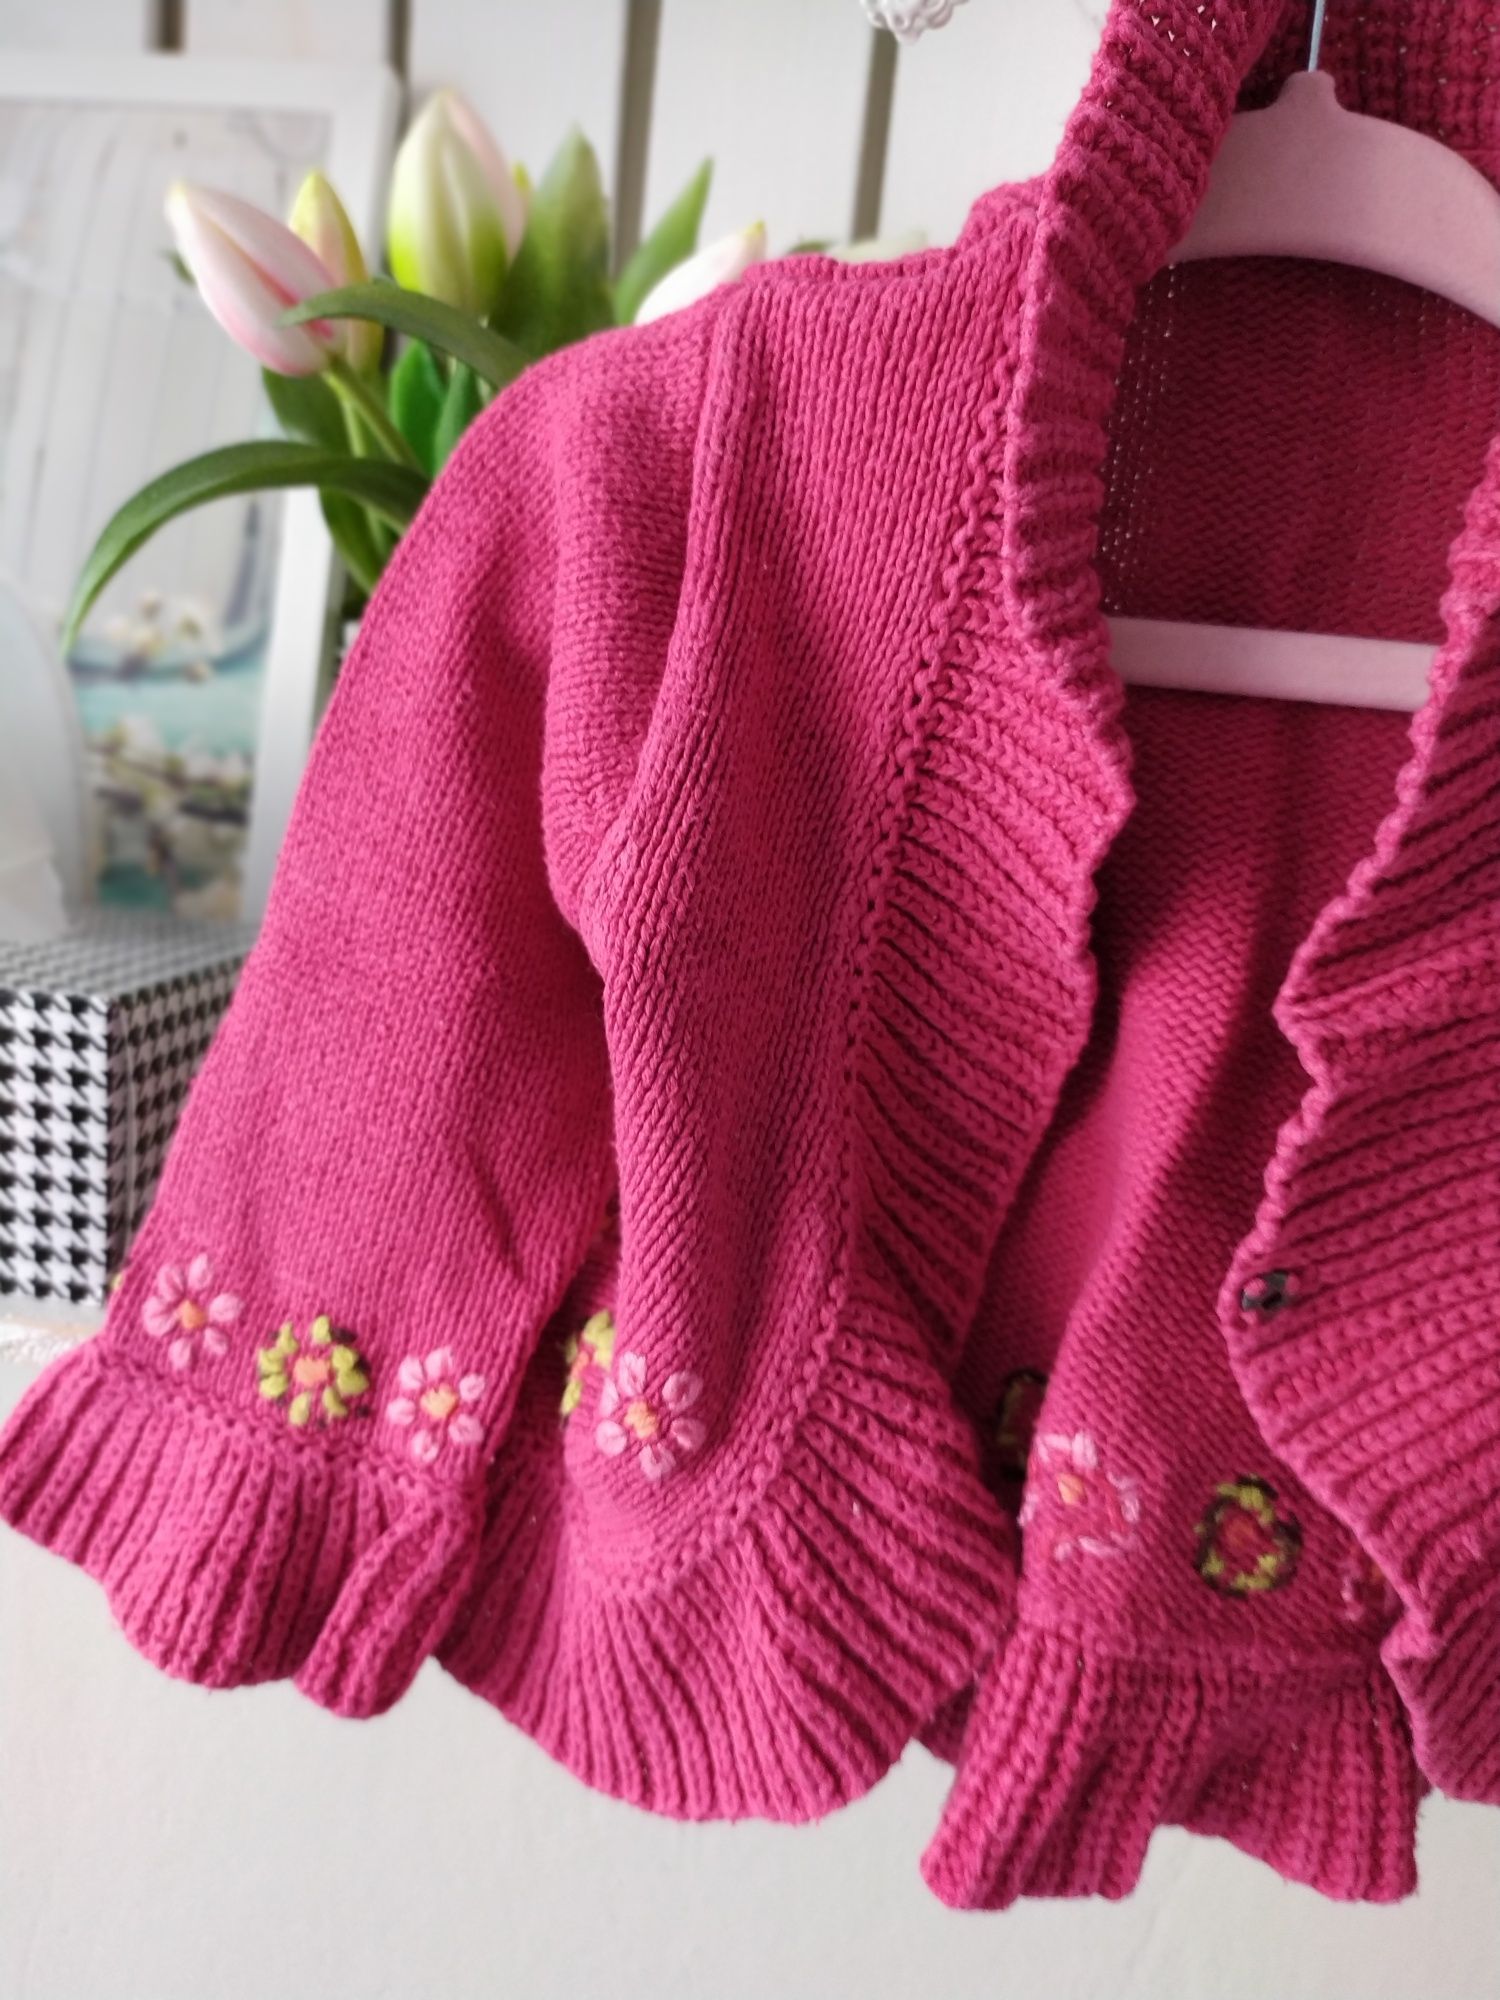 Bolerko sweterek niemowlęcy kardigan róż fuksja dzianinowy Hema 86